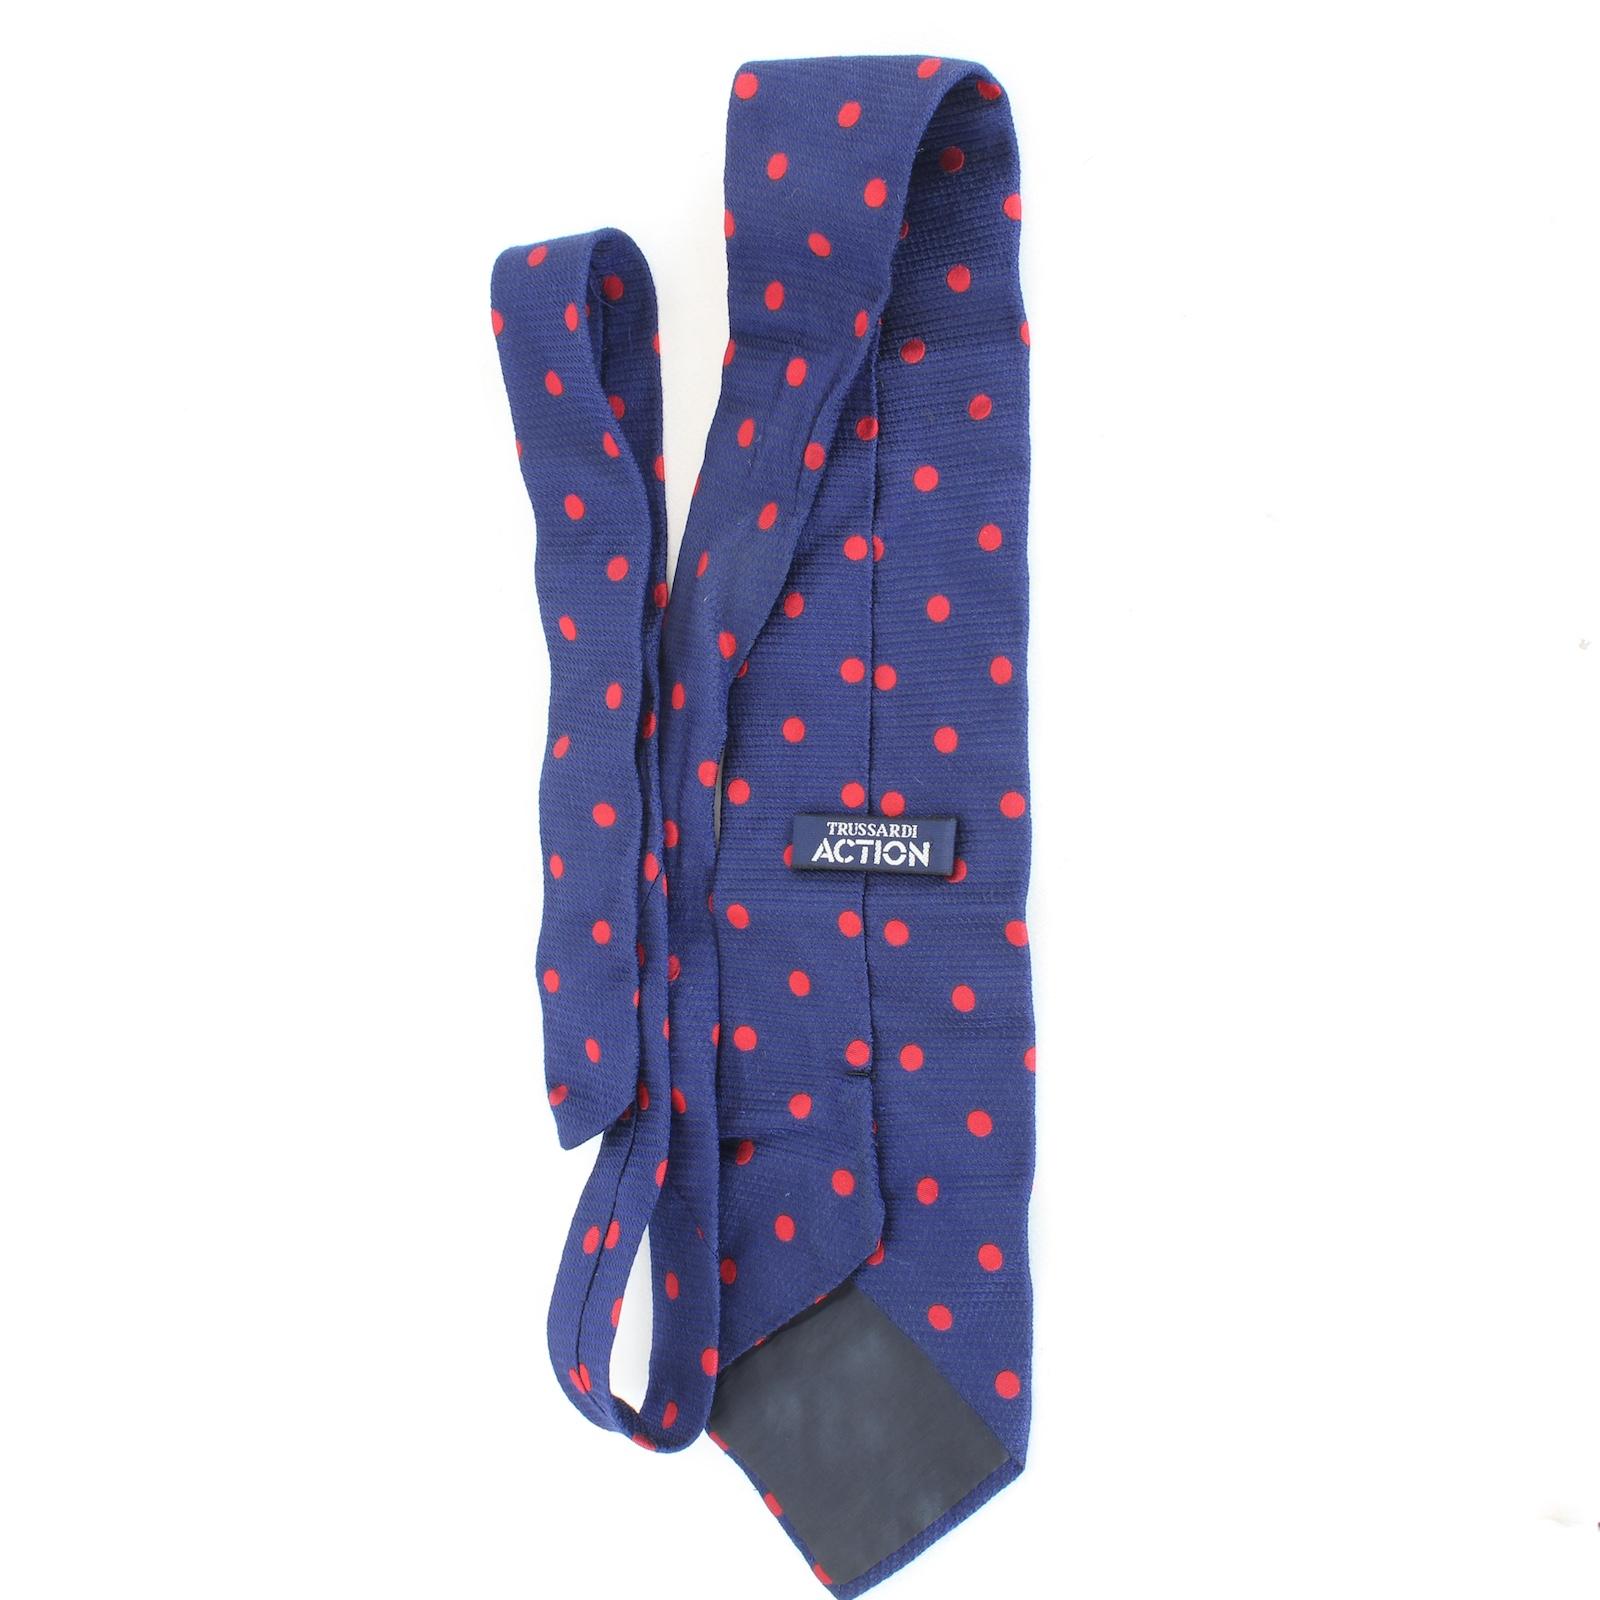 Trussardi élégante cravate vintage des années 90. Bleu et rouge avec motif à pois, 100% soie. Fabriqué en Italie.

Longueur : 146 cm
Largeur : 10 cm